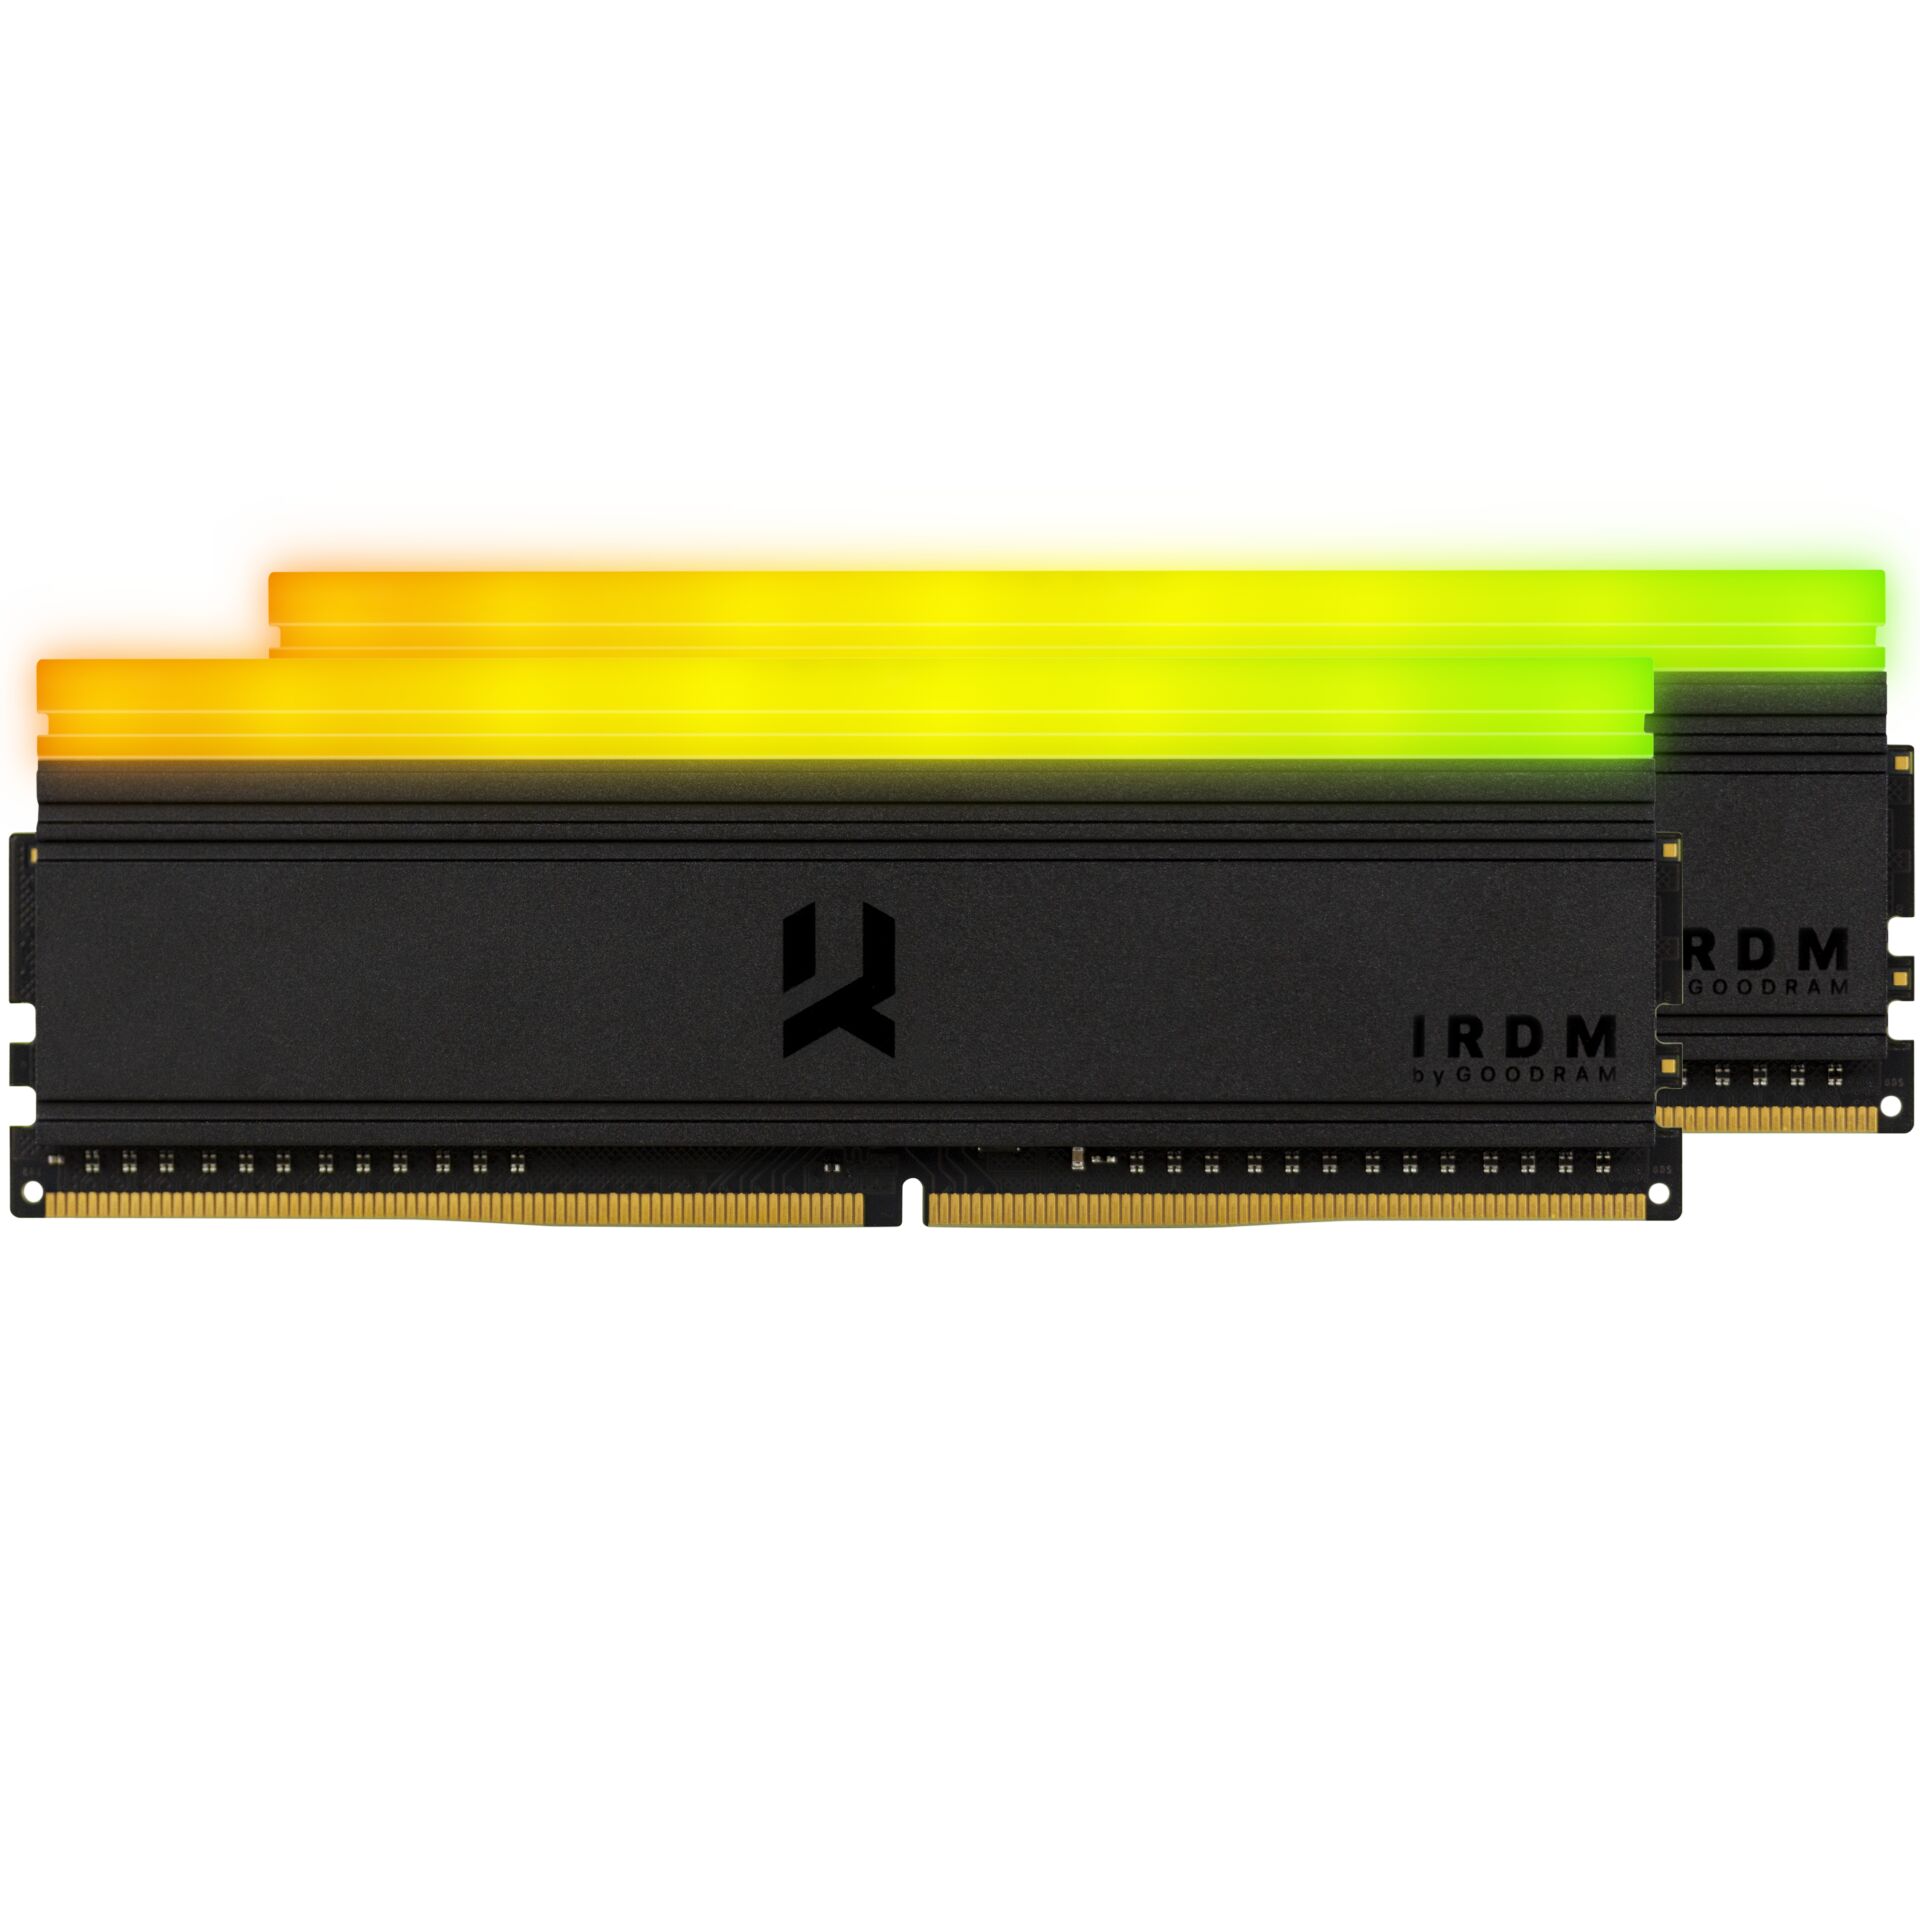 GOODRAM IRDM 3600 MT/s     2x8GB DDR4 KIT DIMM RGB